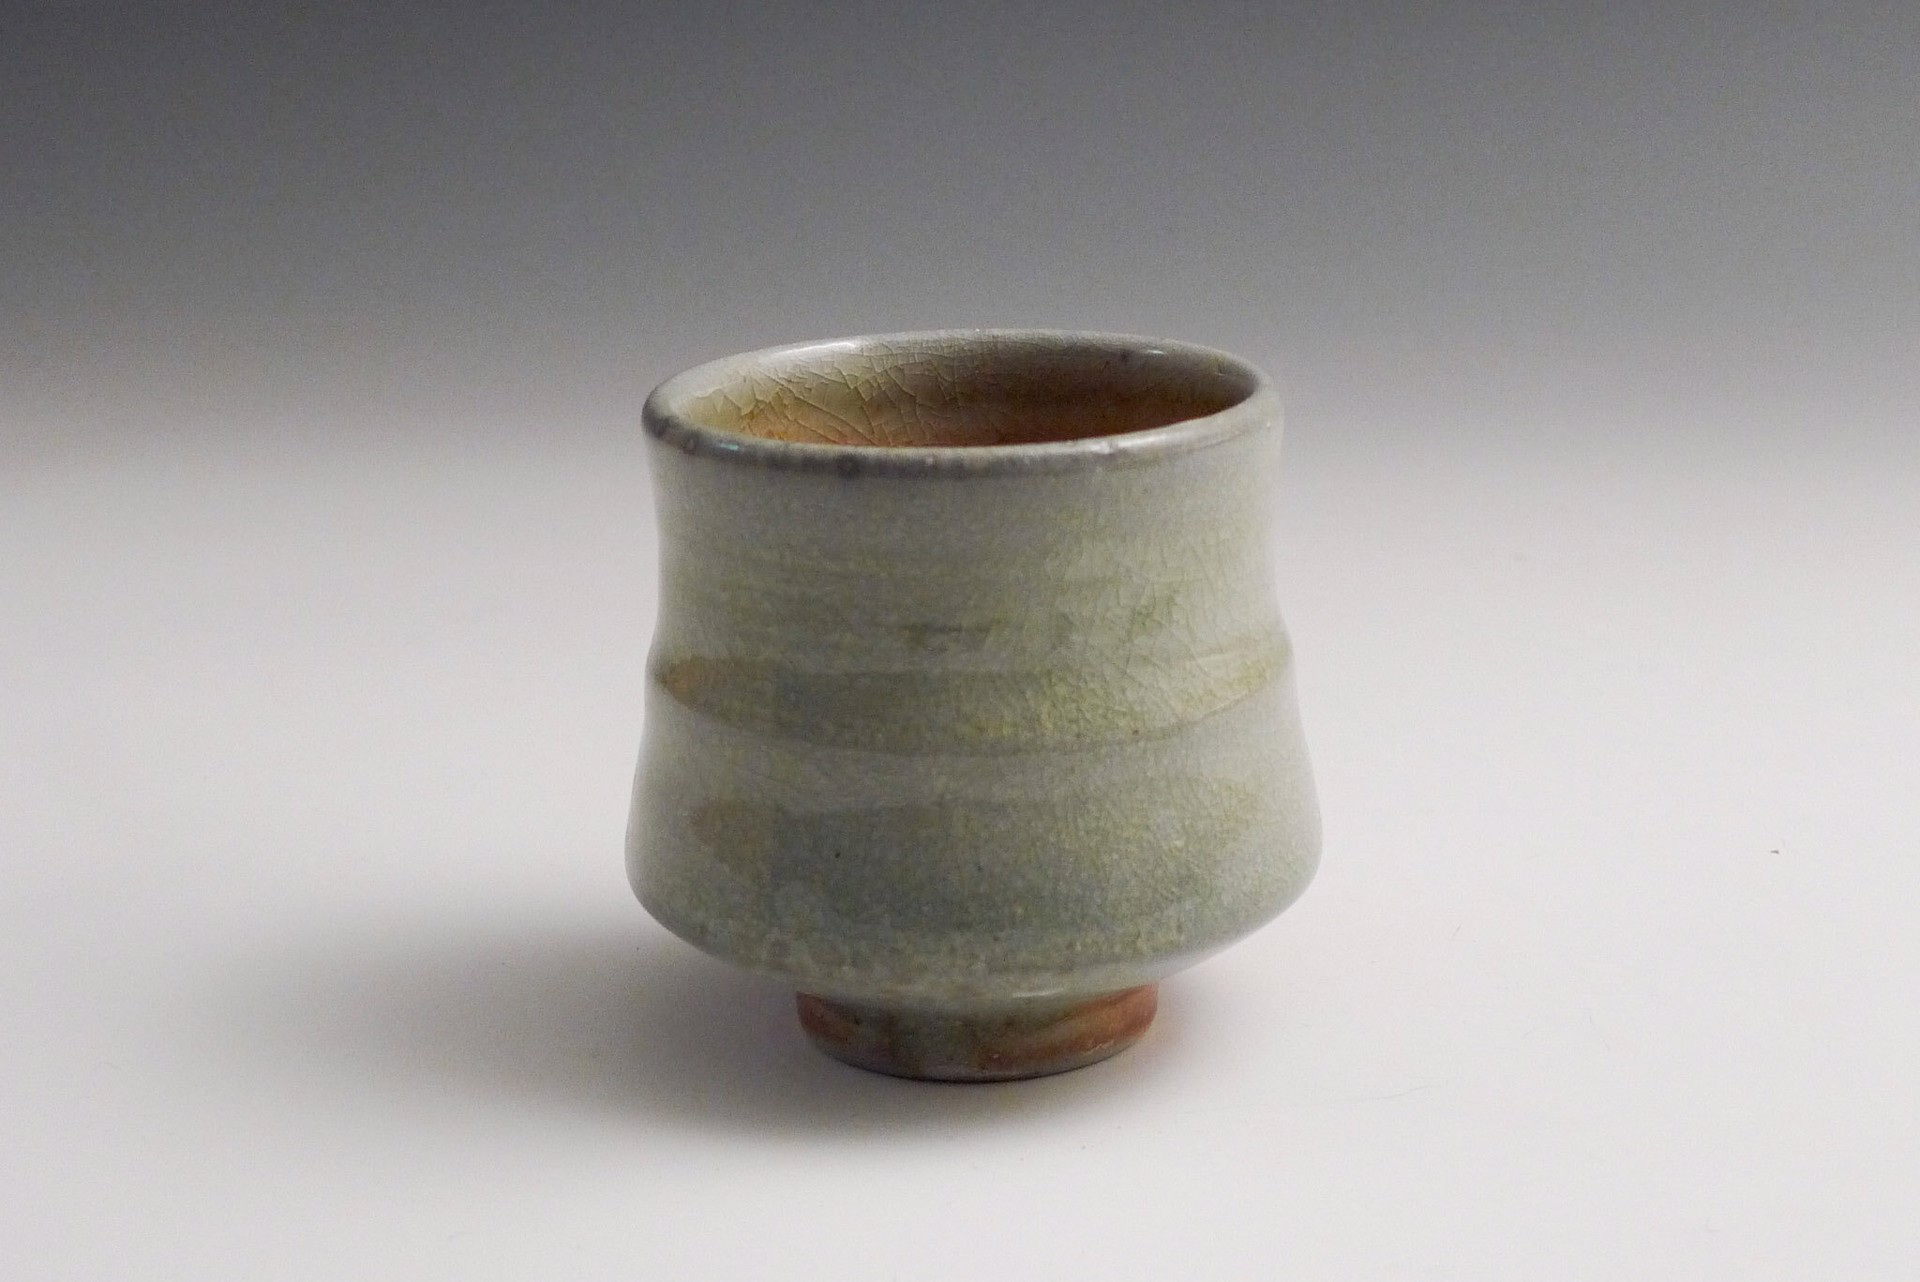 Cup by Mark Skudlarek